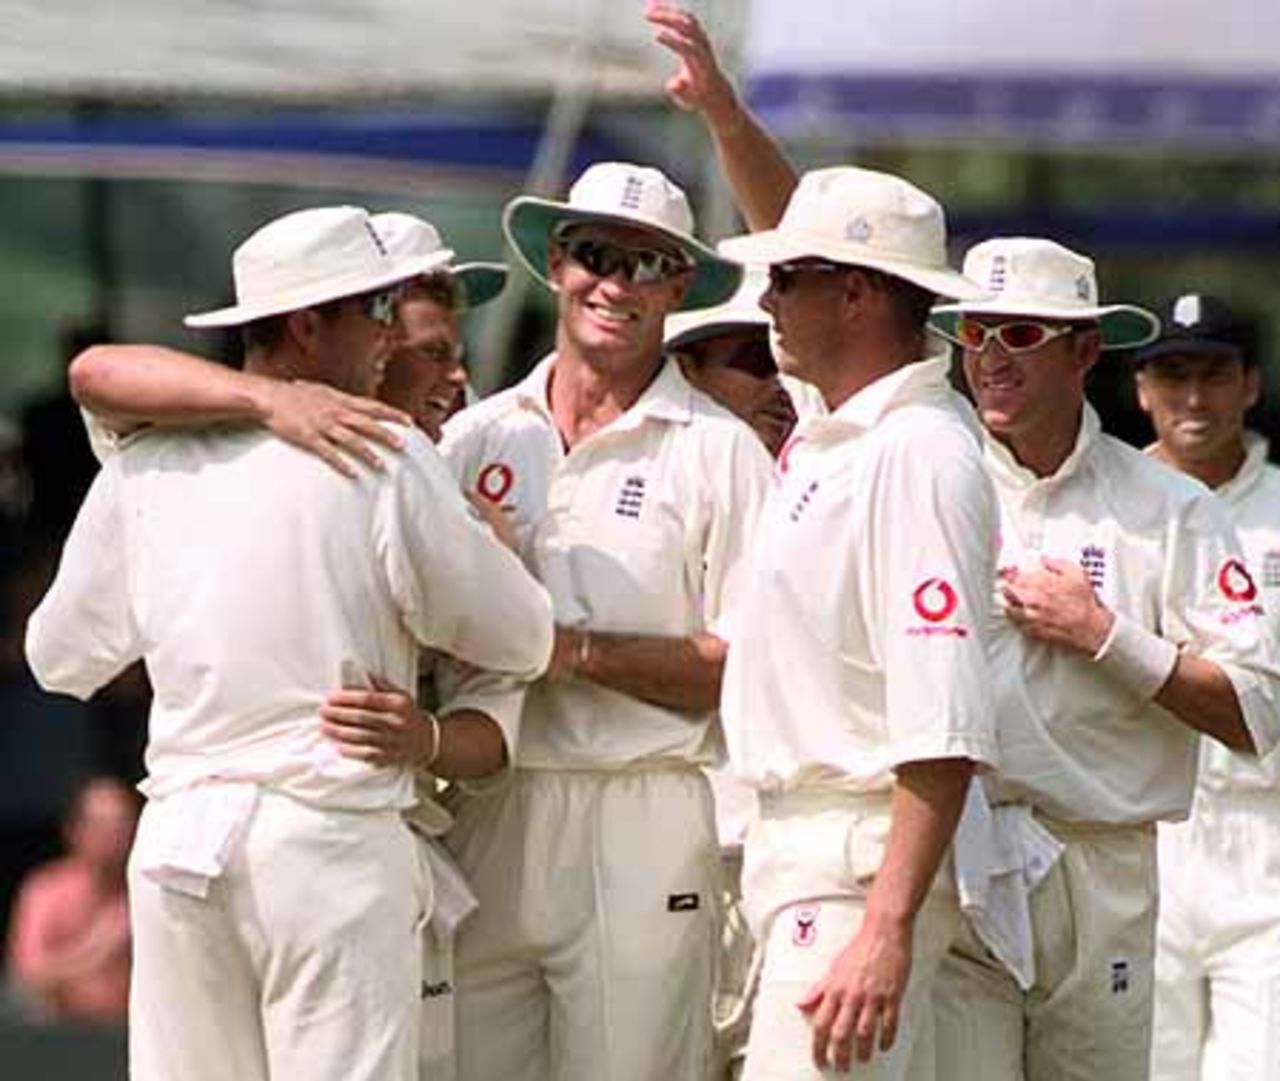 Sri Lanka v England, 2nd Test match at Kandy, 7-11 March 2001